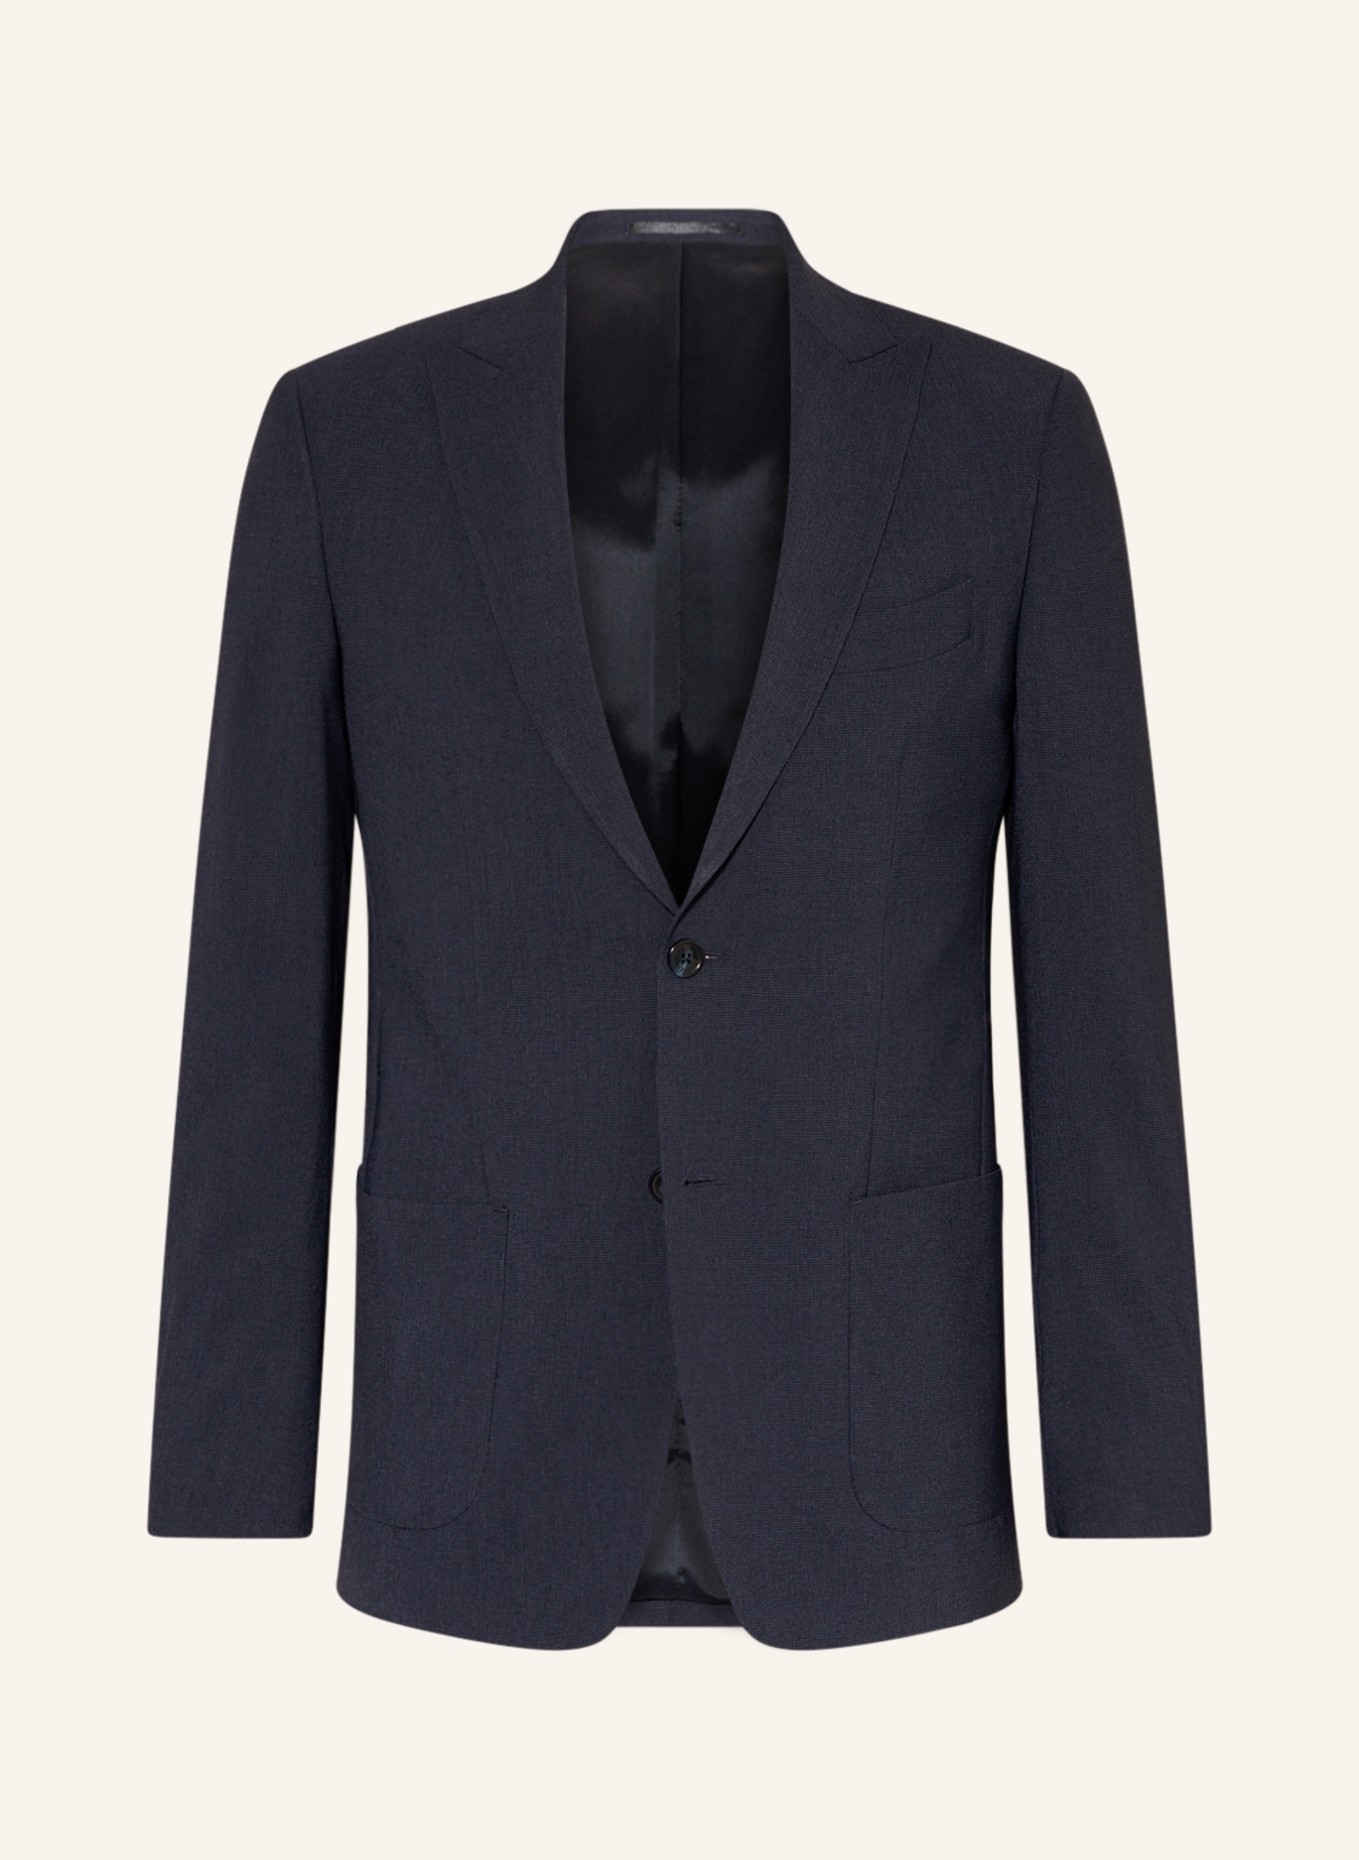 SPSR Suit jacket extra slim fit , Color: 53C3009 Houndstooth Blue (Image 1)